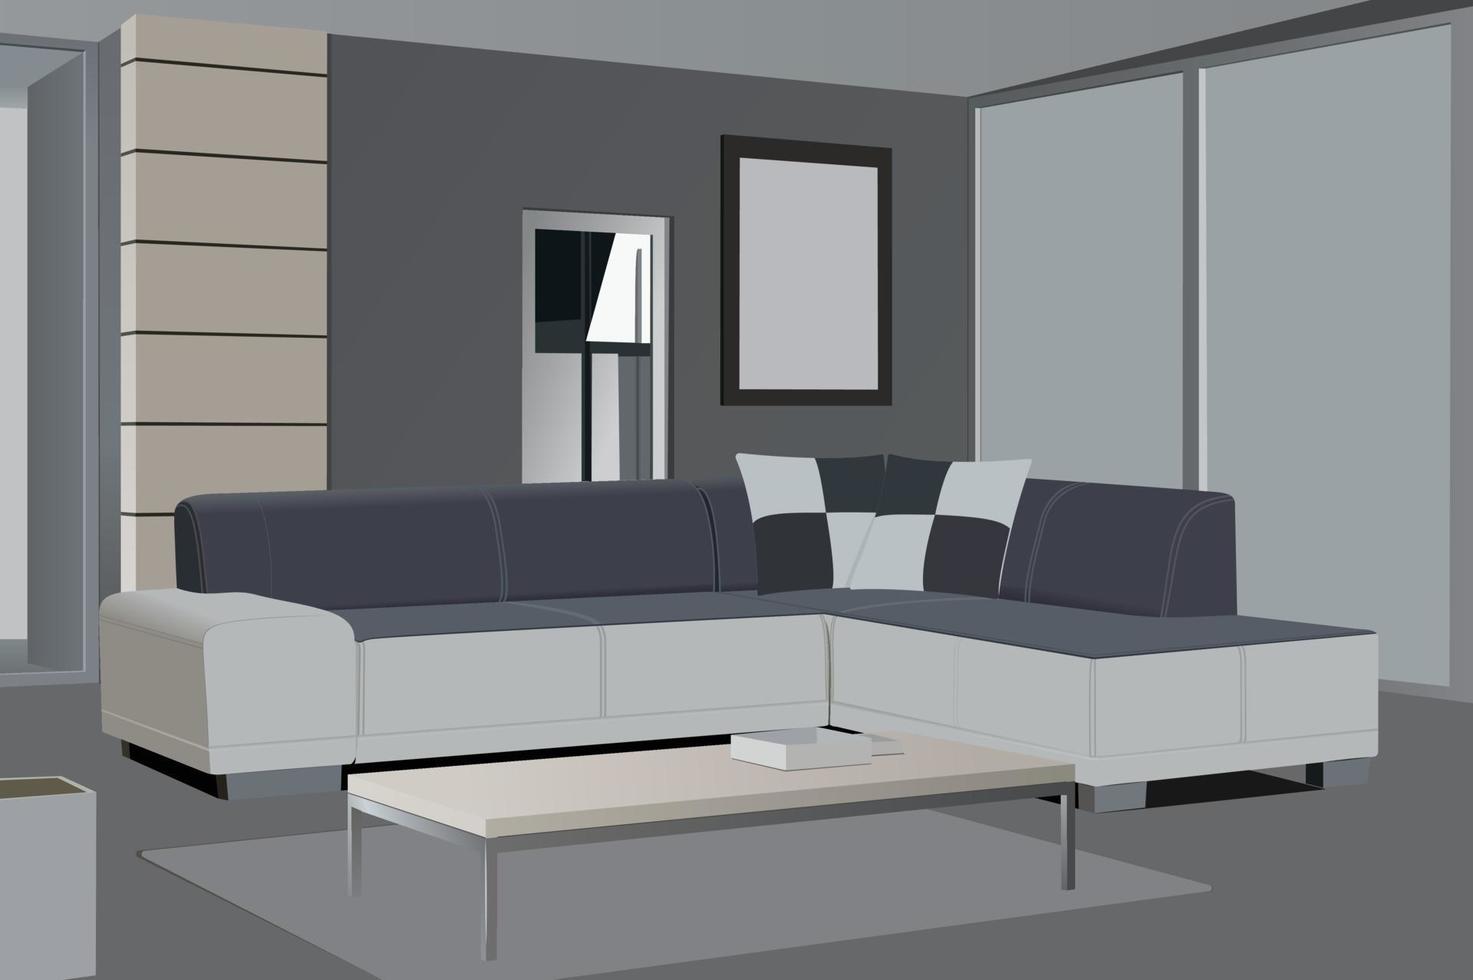 leven kamer realistisch ontwerp met modern huis theater systeem. interieur achtergrond met meubilair lounge en sofa vector illustratie.